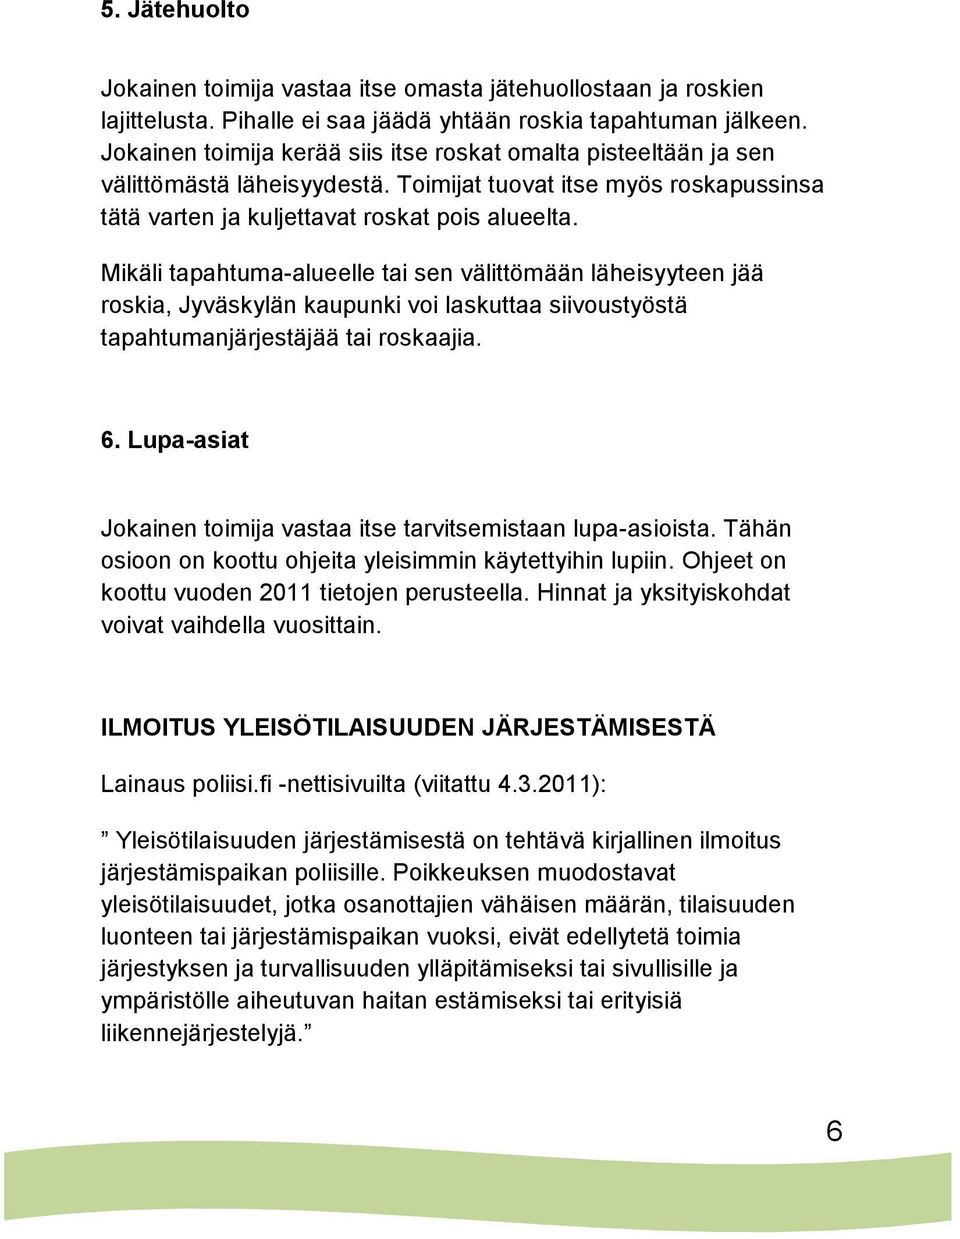 Mikäli tapahtuma-alueelle tai sen välittömään läheisyyteen jää roskia, Jyväskylän kaupunki voi laskuttaa siivoustyöstä tapahtumanjärjestäjää tai roskaajia. 6.